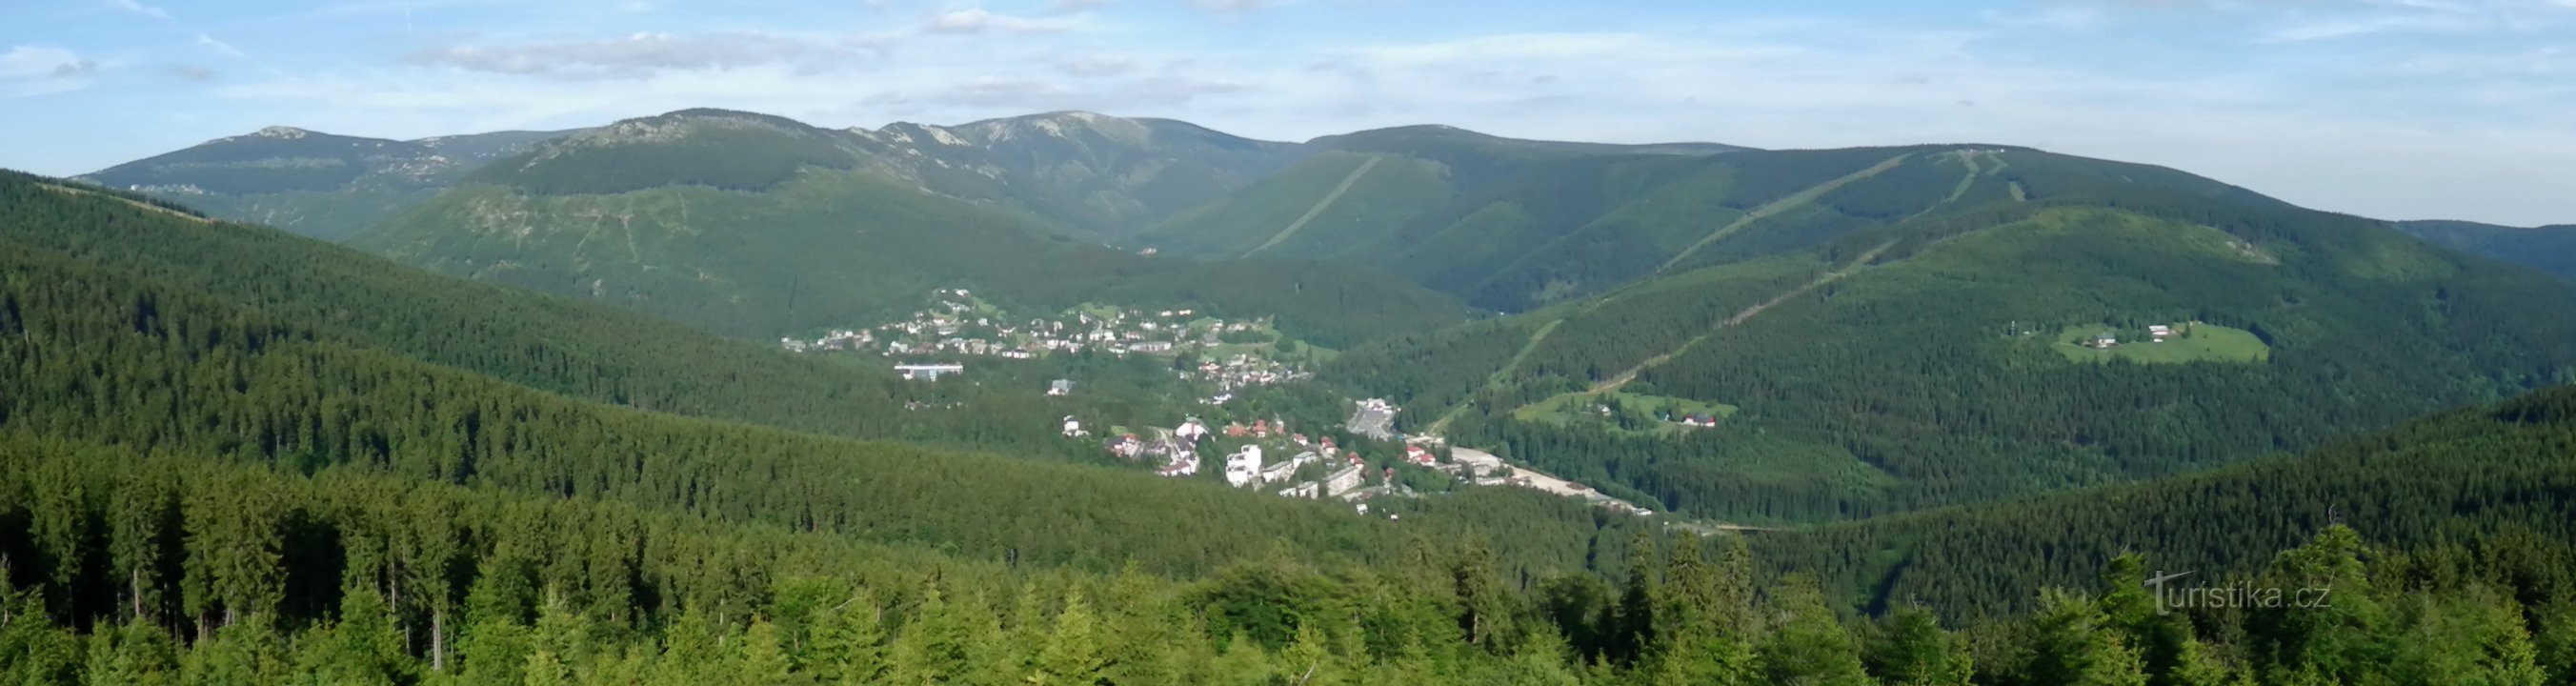 Панорамний вид зі скелі Гарраха (від Малого Шпічака до Громовки), внизу